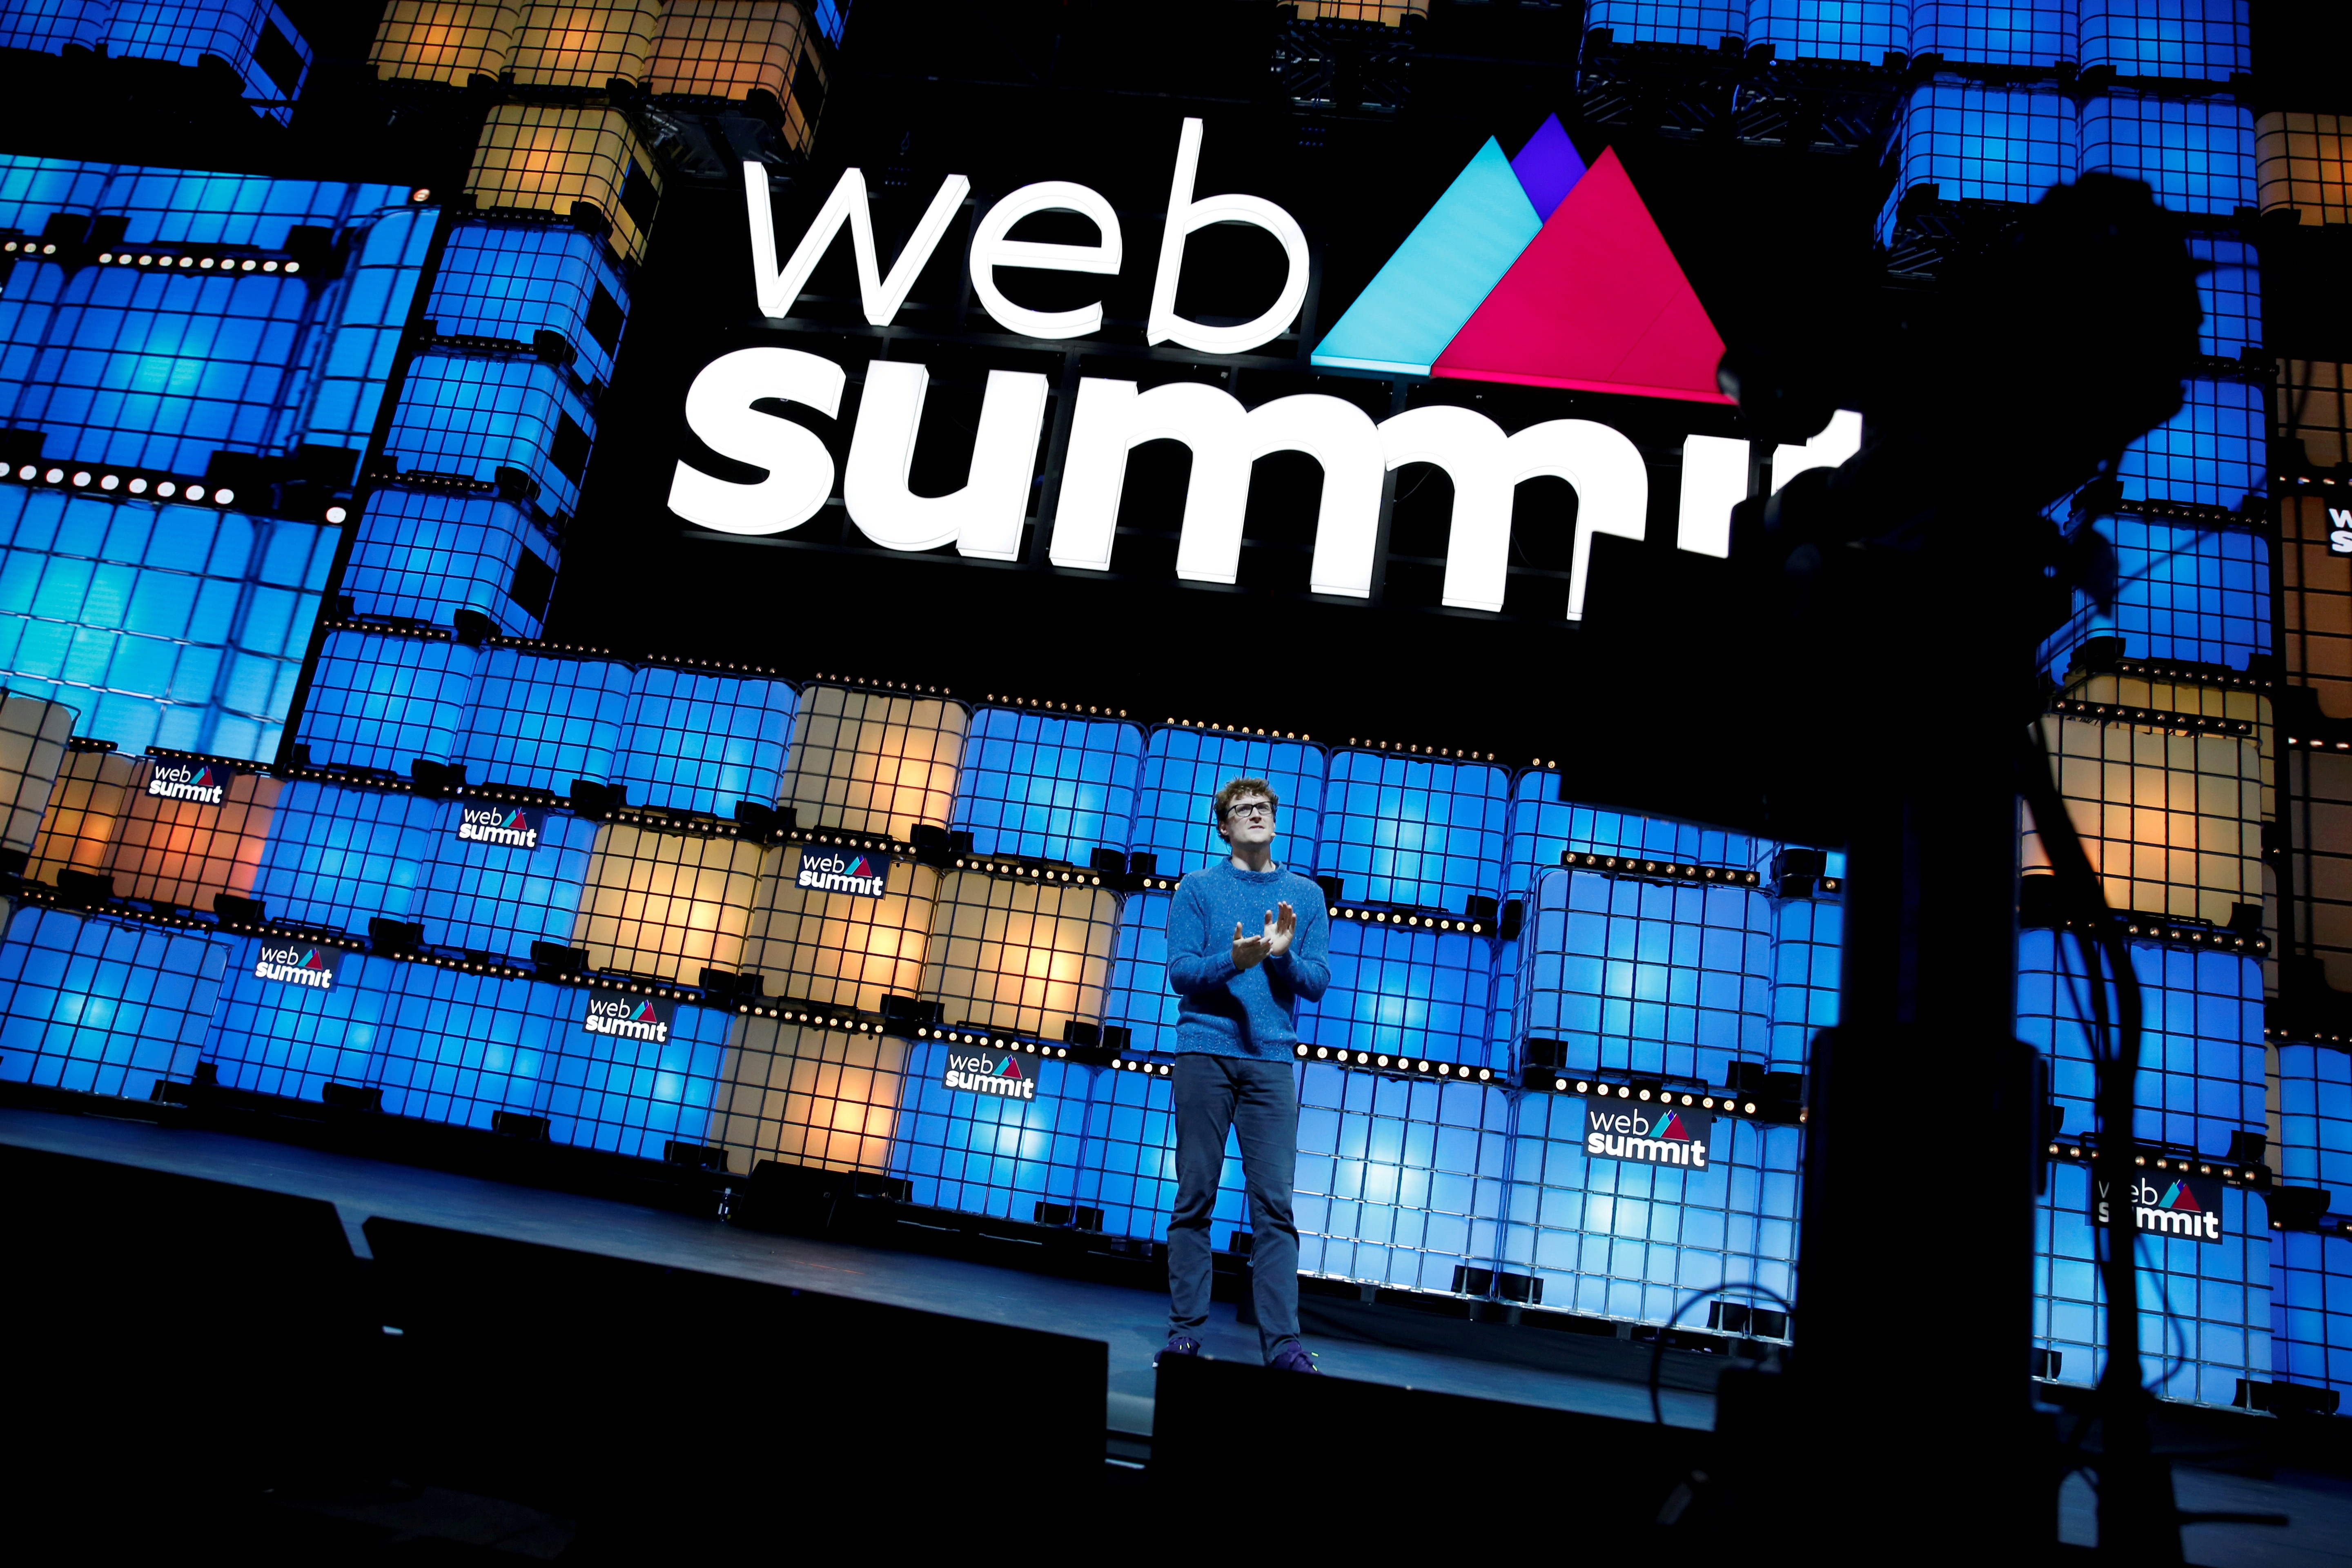 Fundador da Web Summit, Paddy Cosgrave discursa em uma edição em foto de arquivo